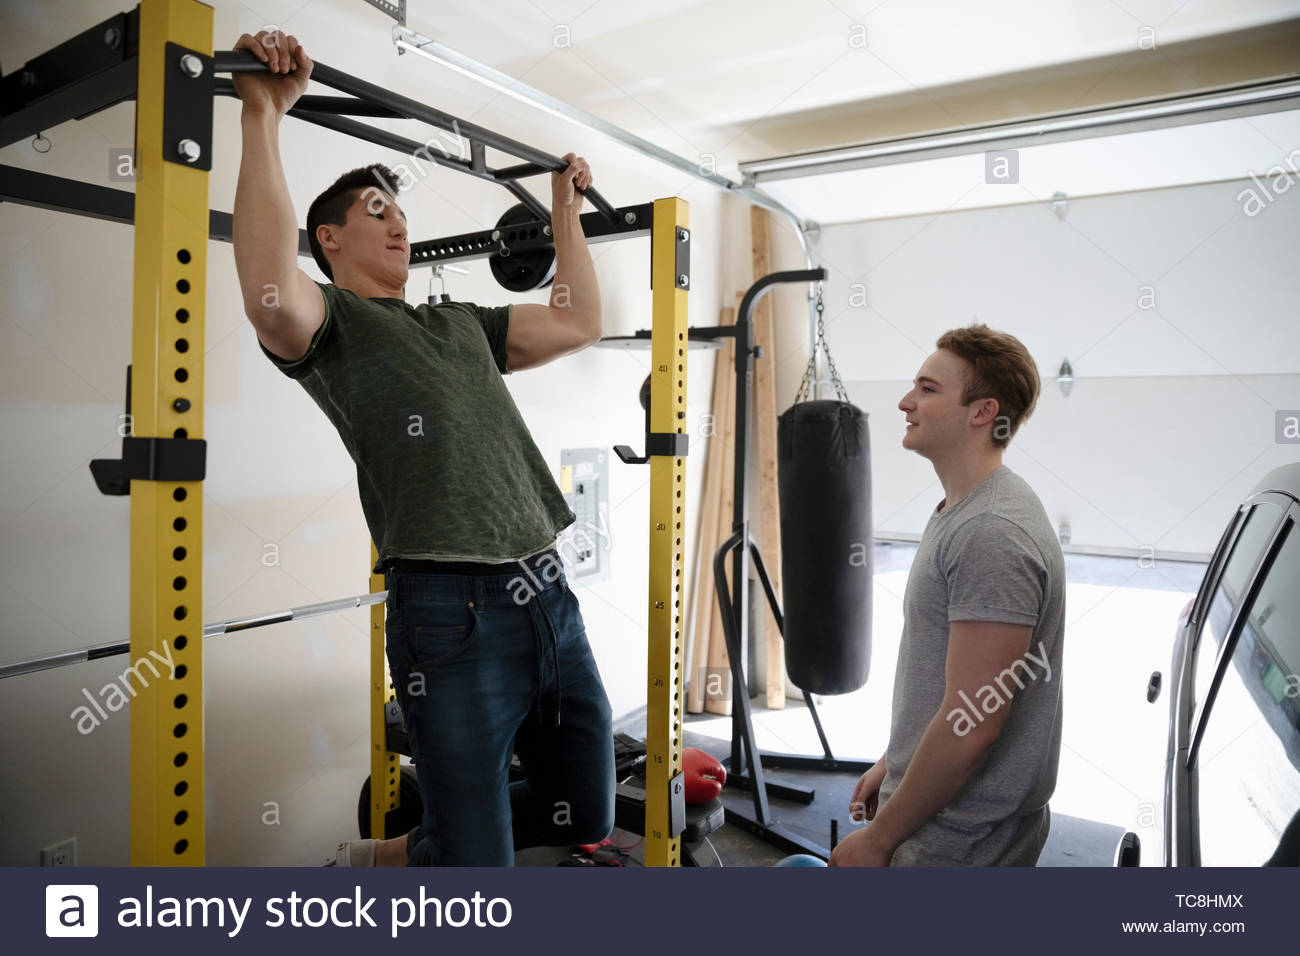 Los hombres jóvenes que trabajan en el garaje Foto de stock